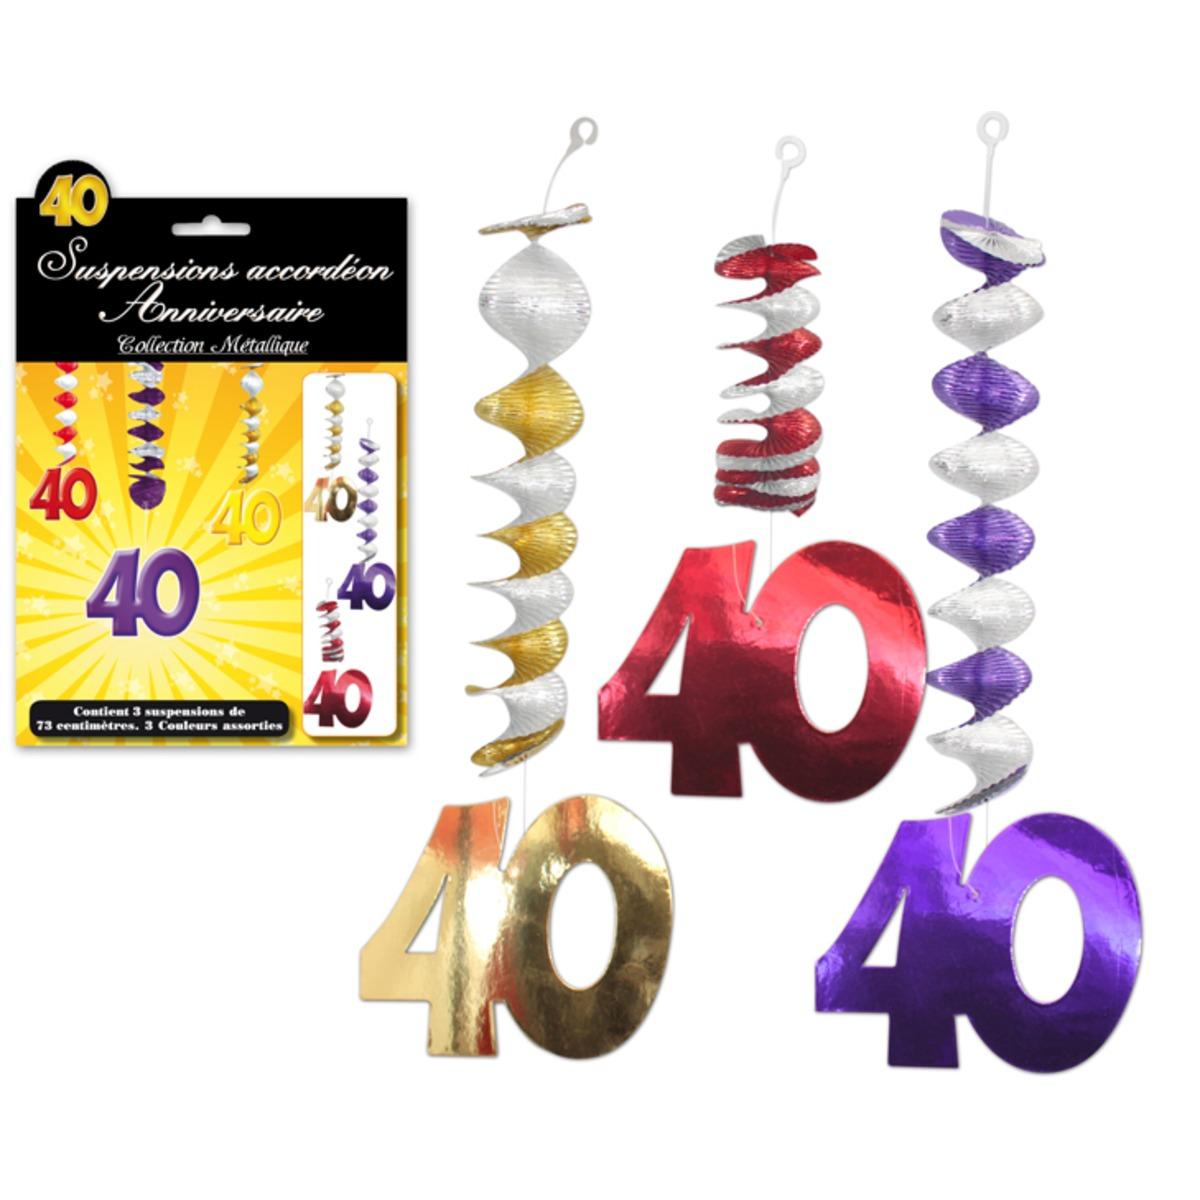 Lot de 3 suspensions accordéon Anniversaire 40 ans - 73 cm - Multicolore